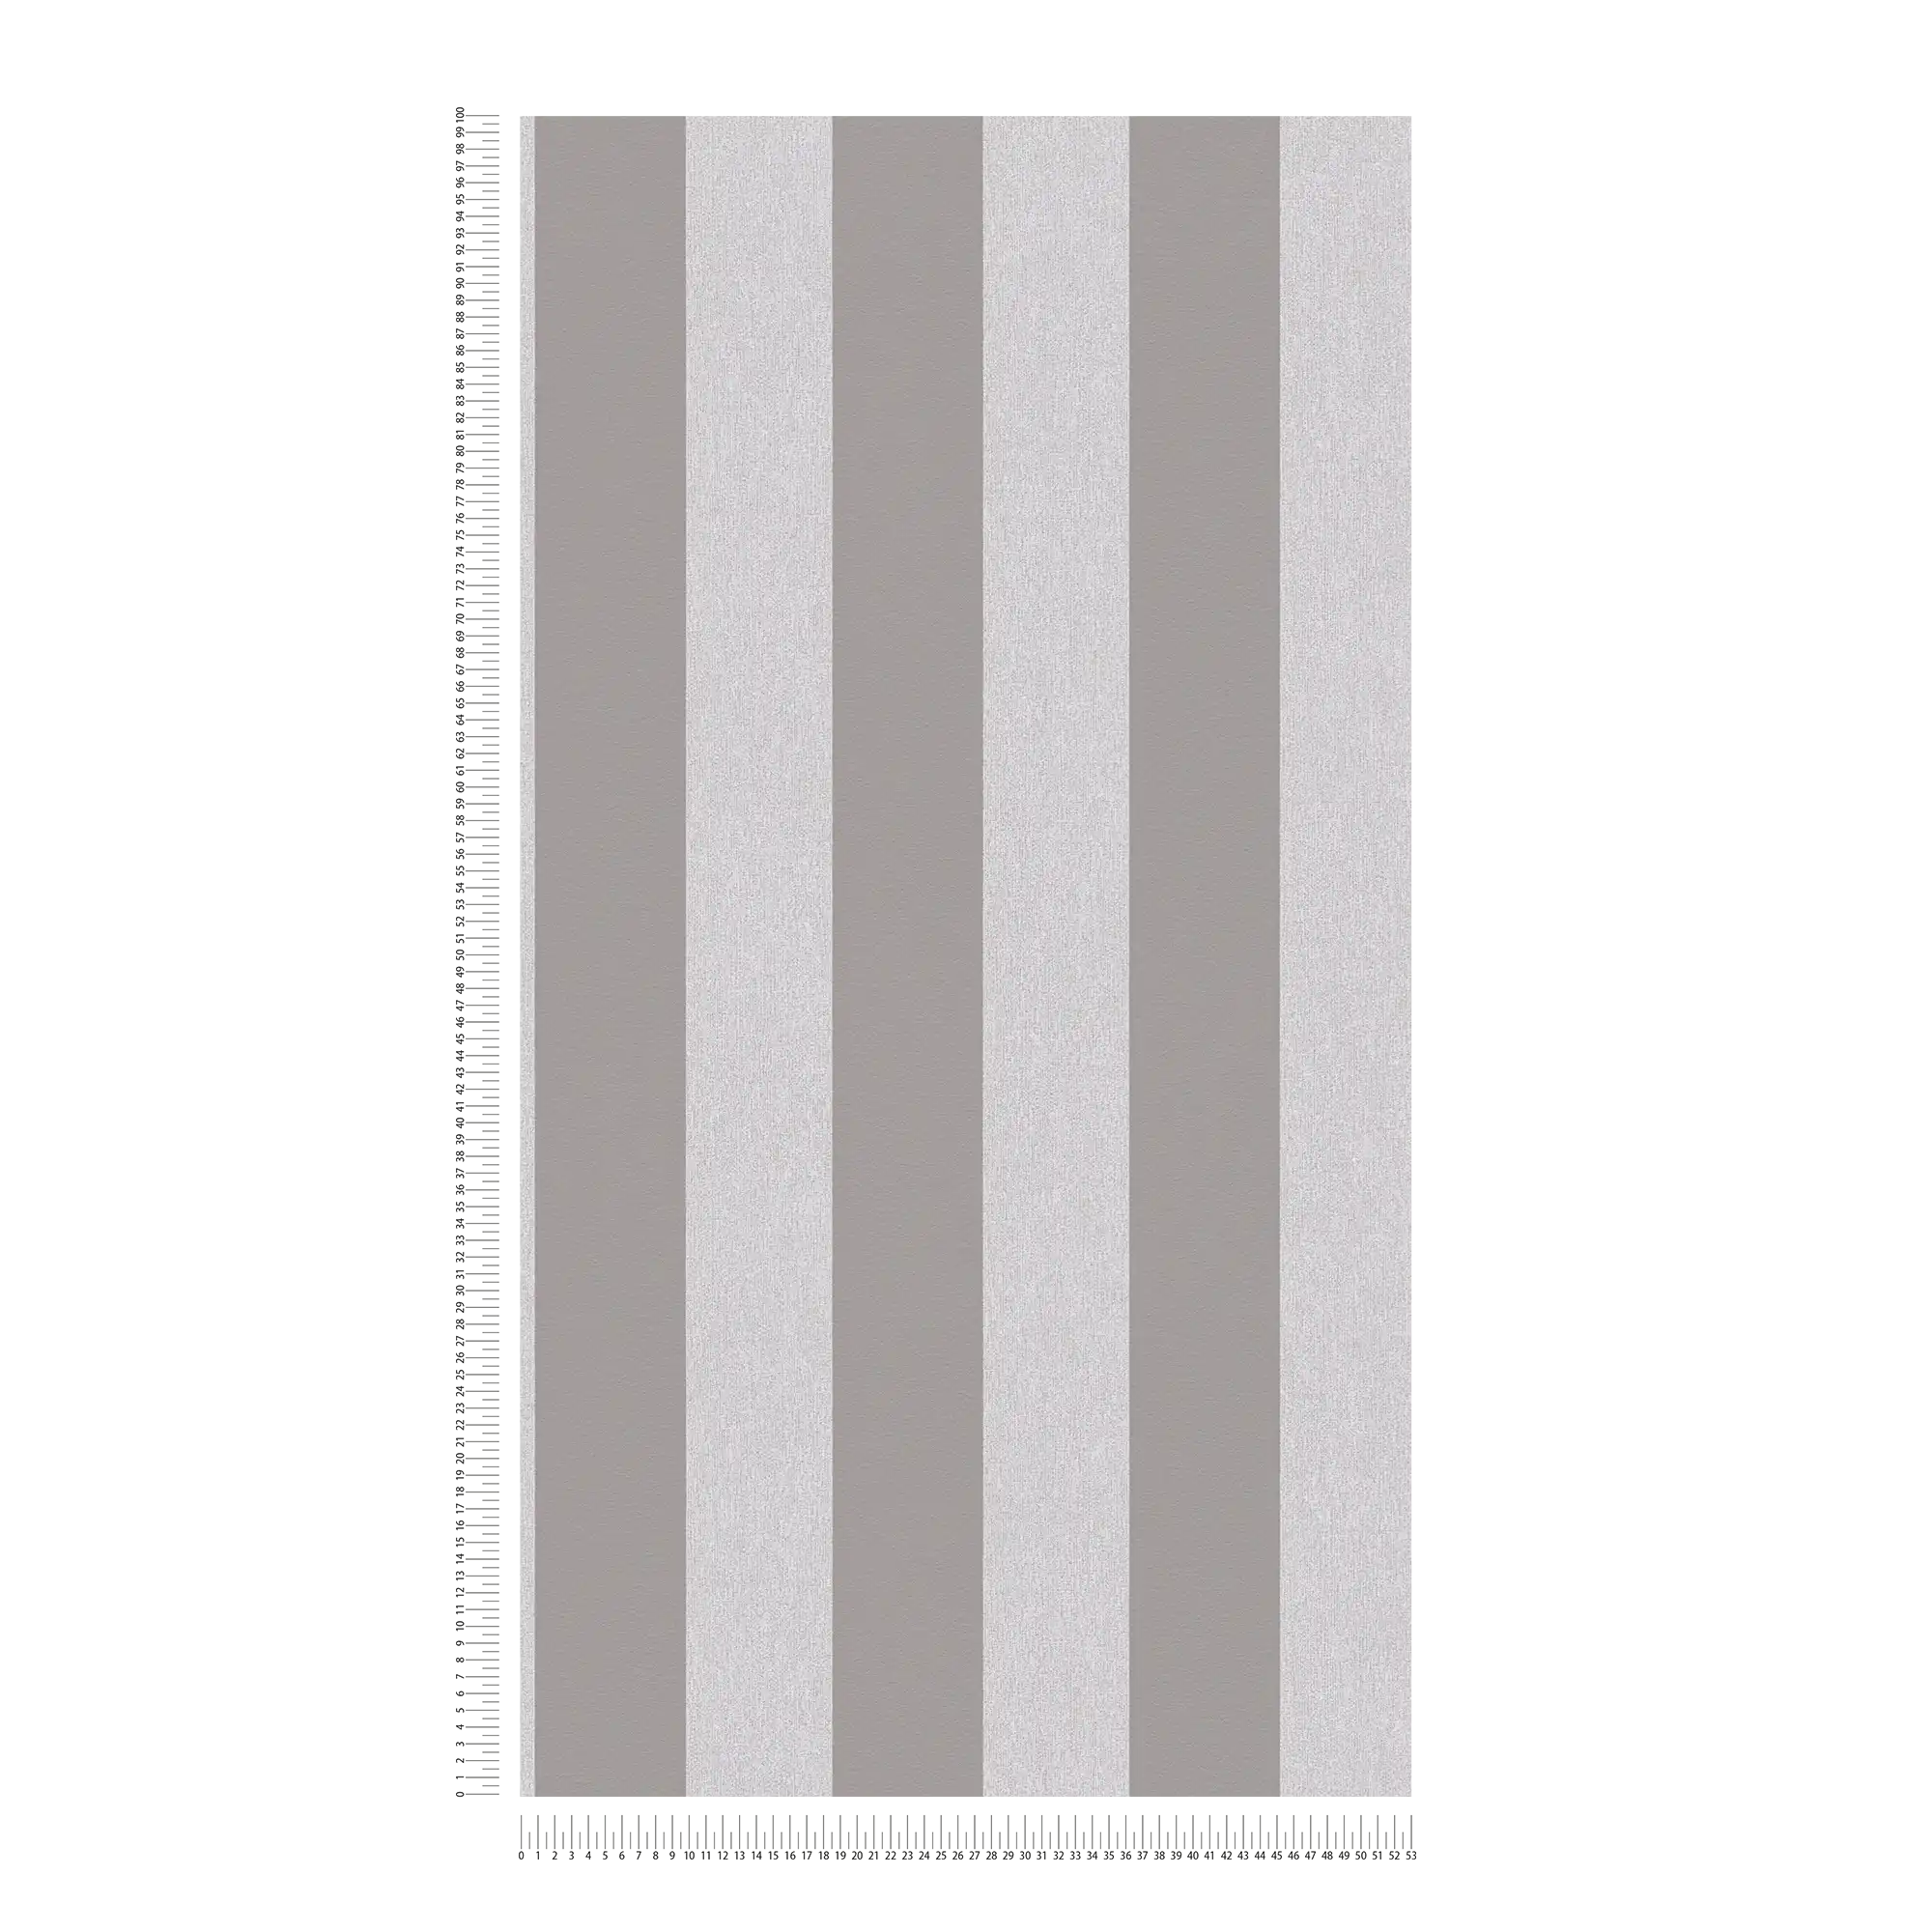             Onderlaag behang met structuur optiek & strepenpatroon - grijs, lichtgrijs
        